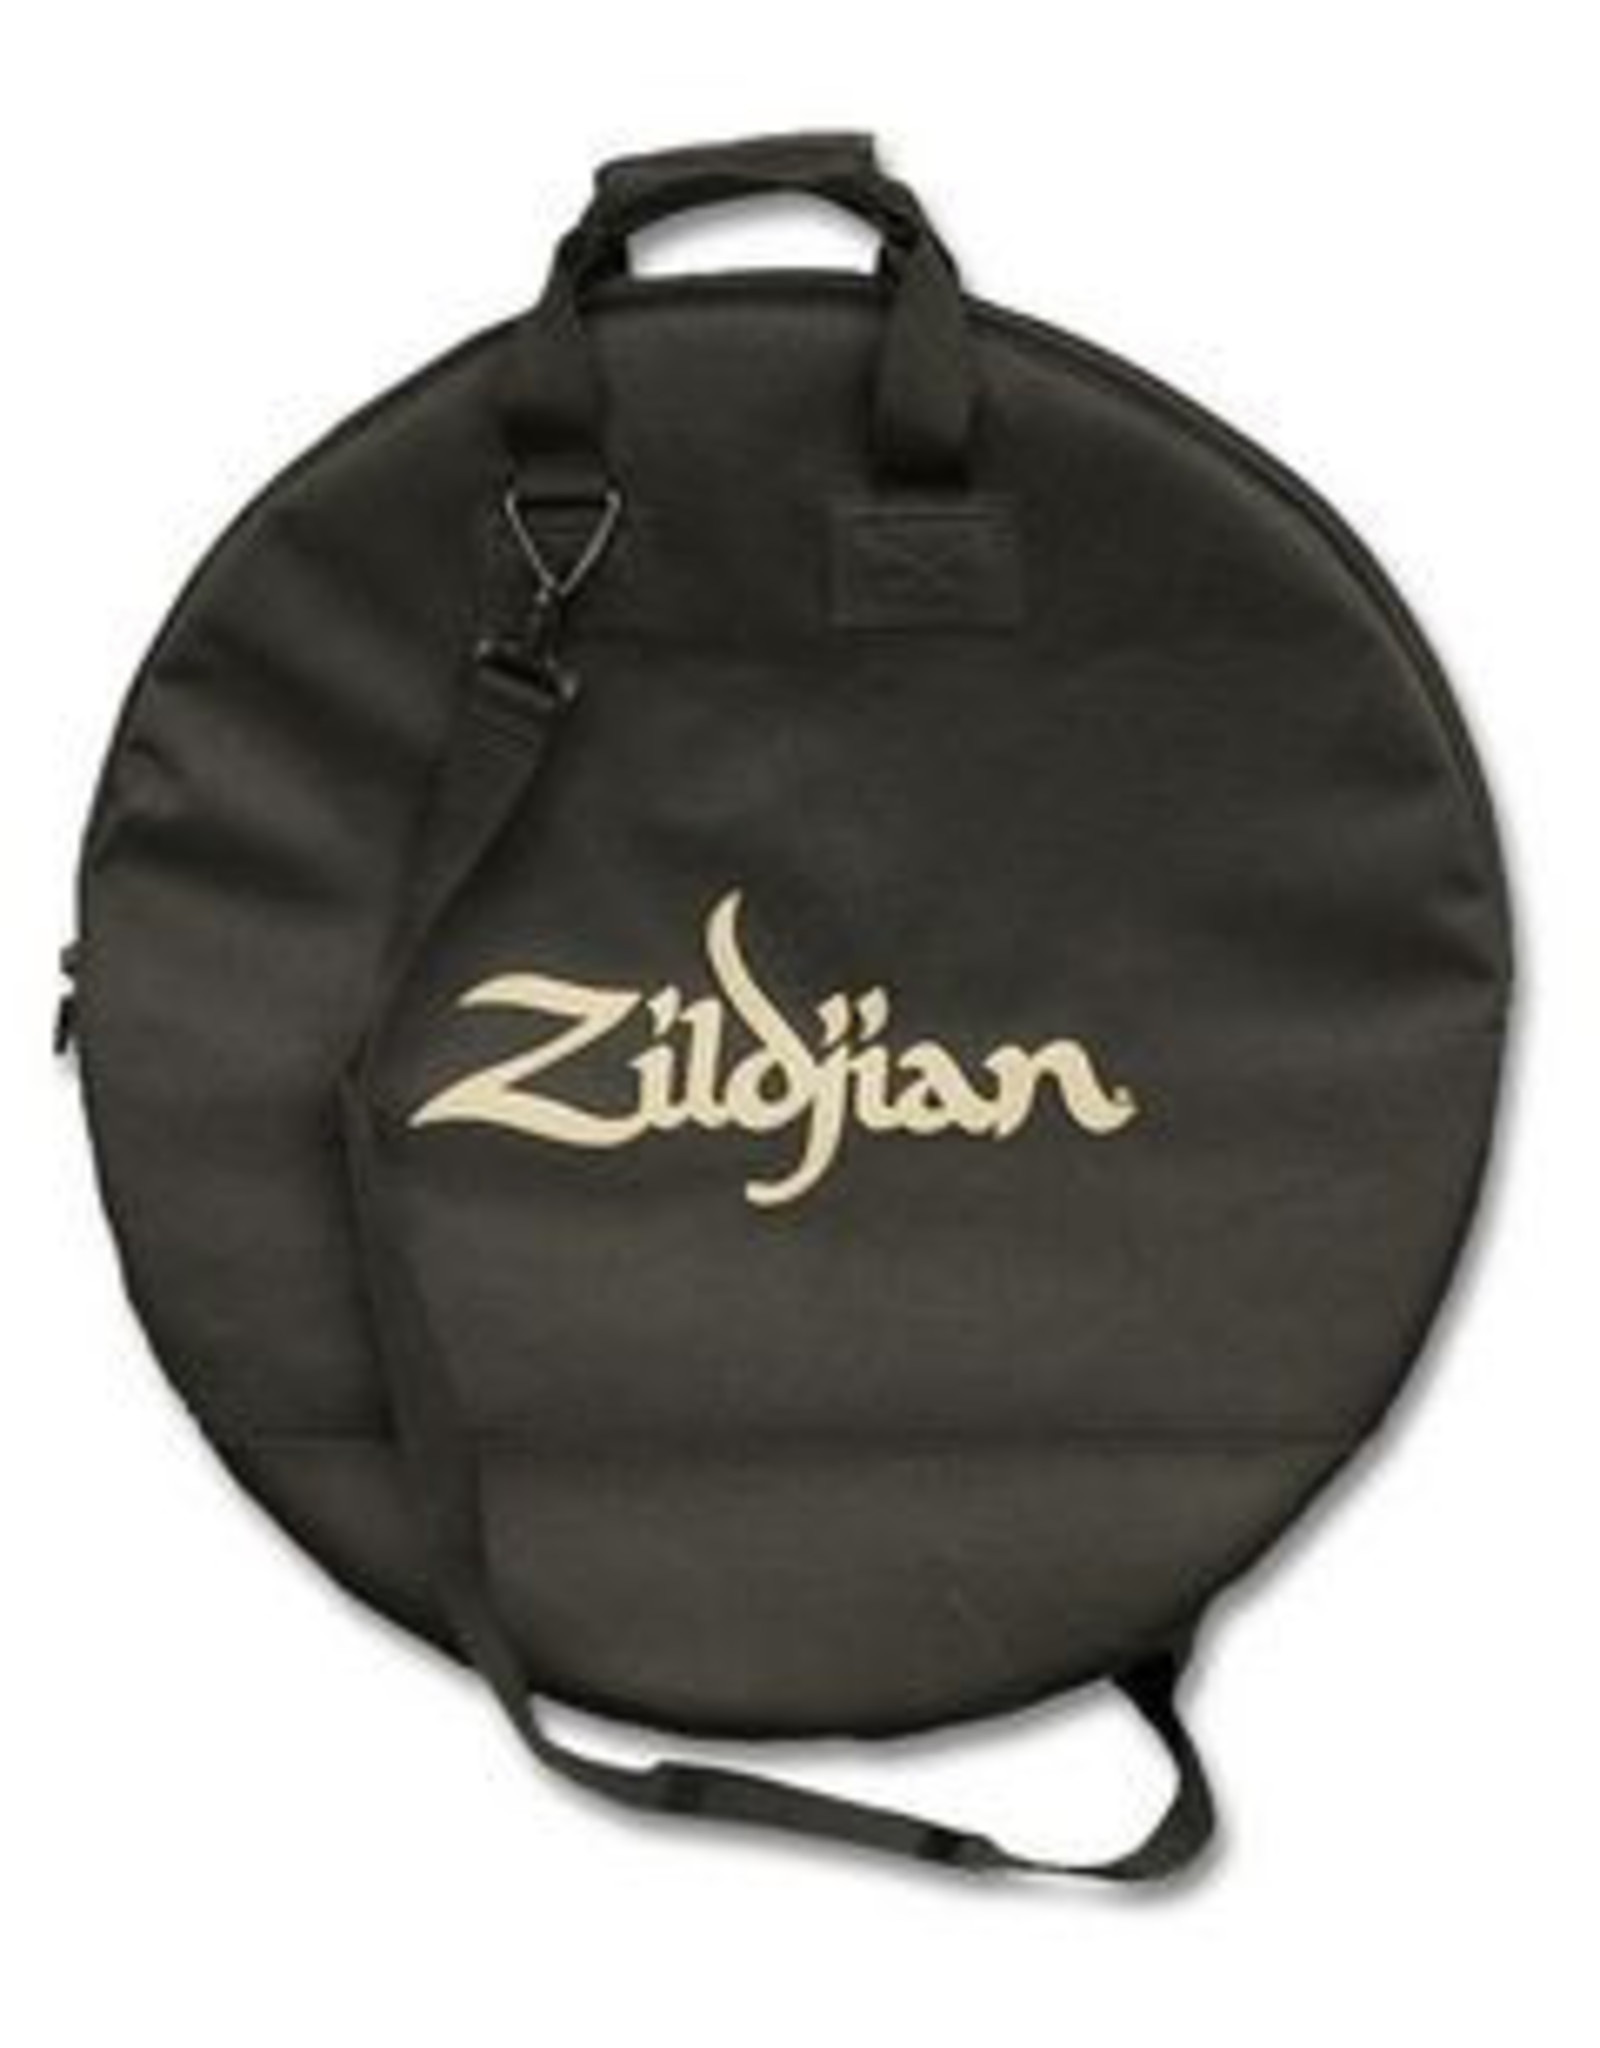 Zildjian ZILDJIAN Tasche, Deluxe Cymbal